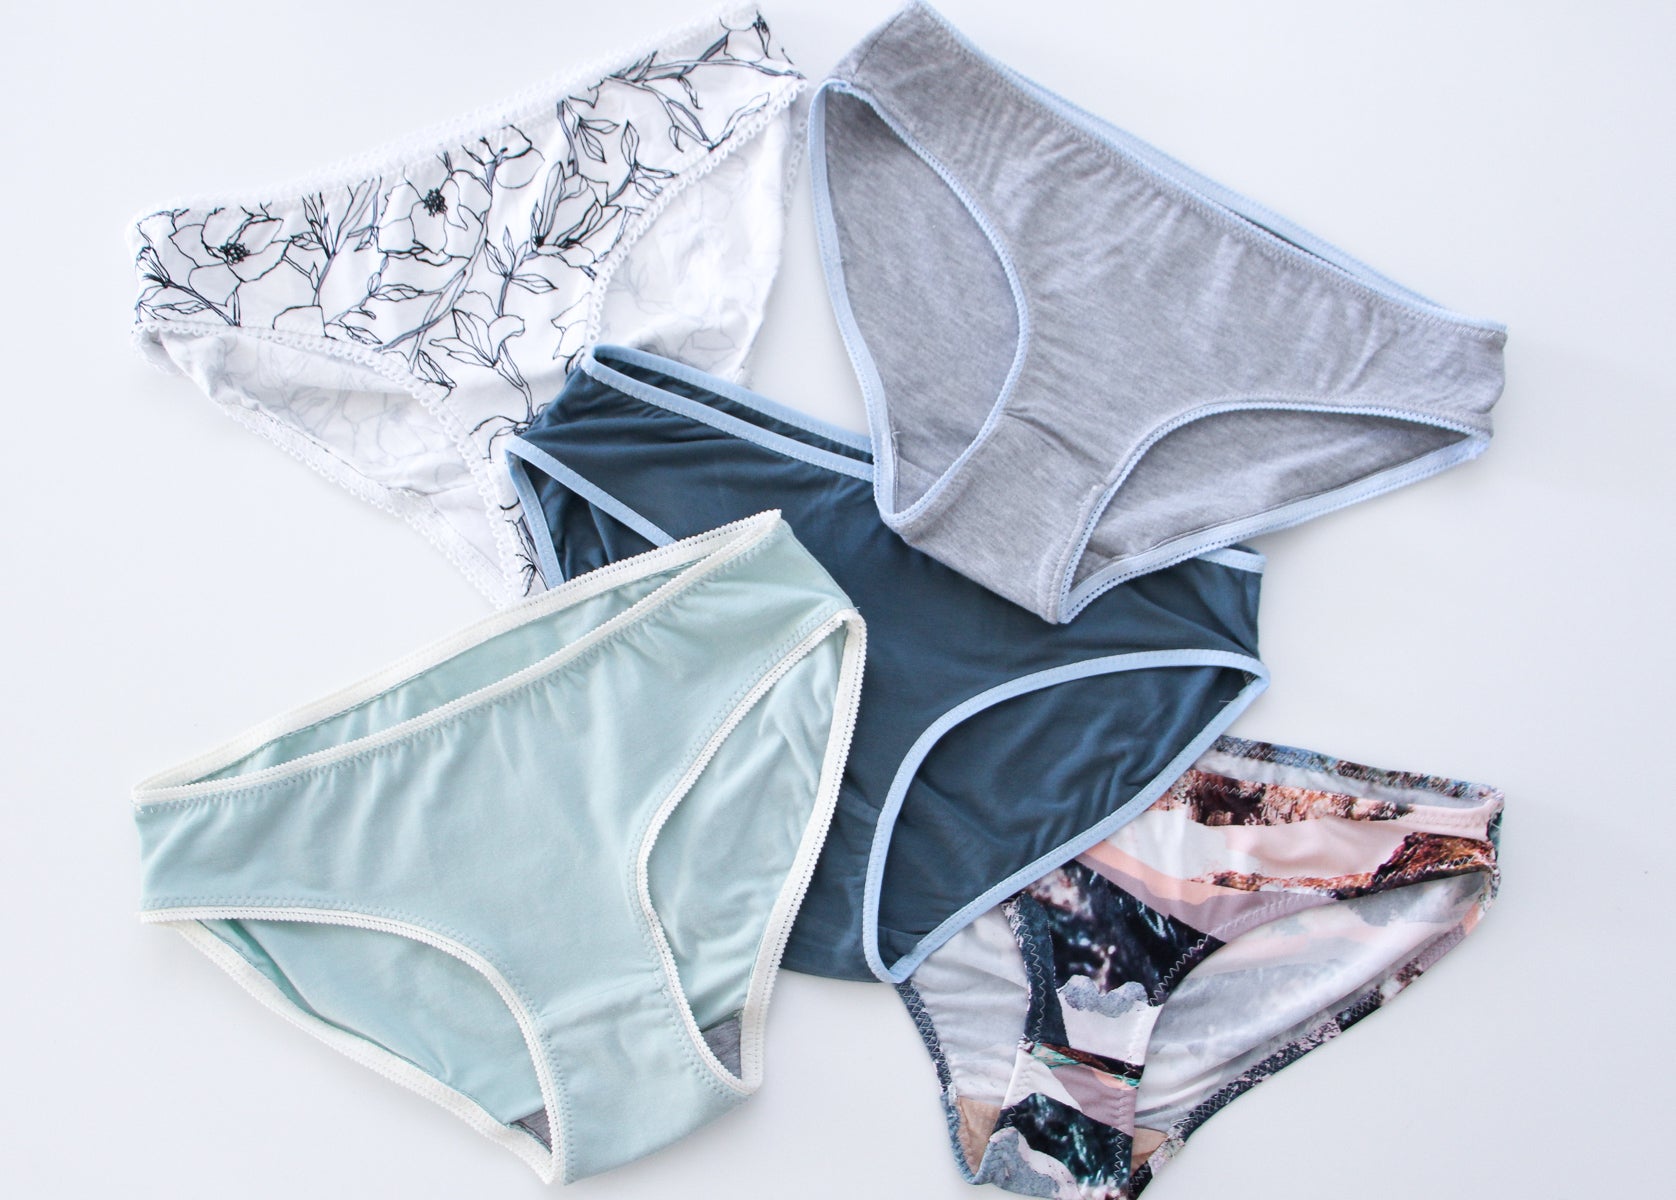 Addi Panties pattern by Natalia Iakovleva